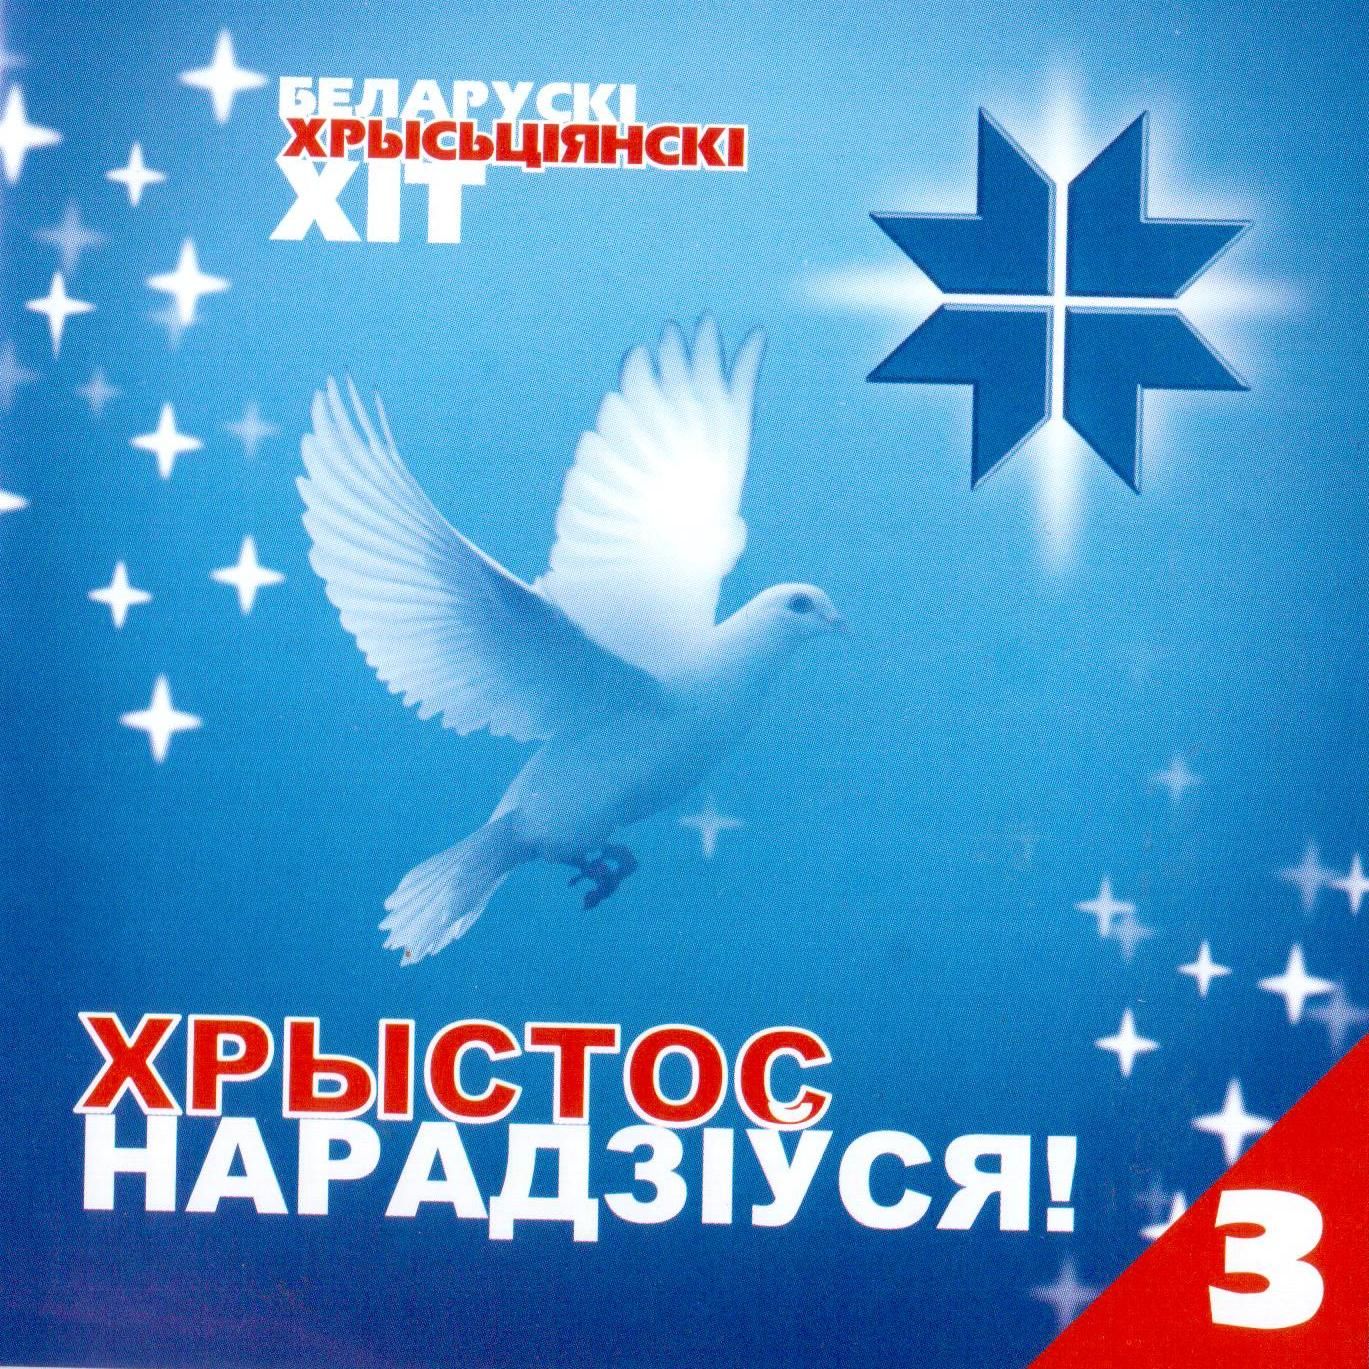 Беларускi хрысьцянскi xiт 3 — Сборник белорусской христианской музыки